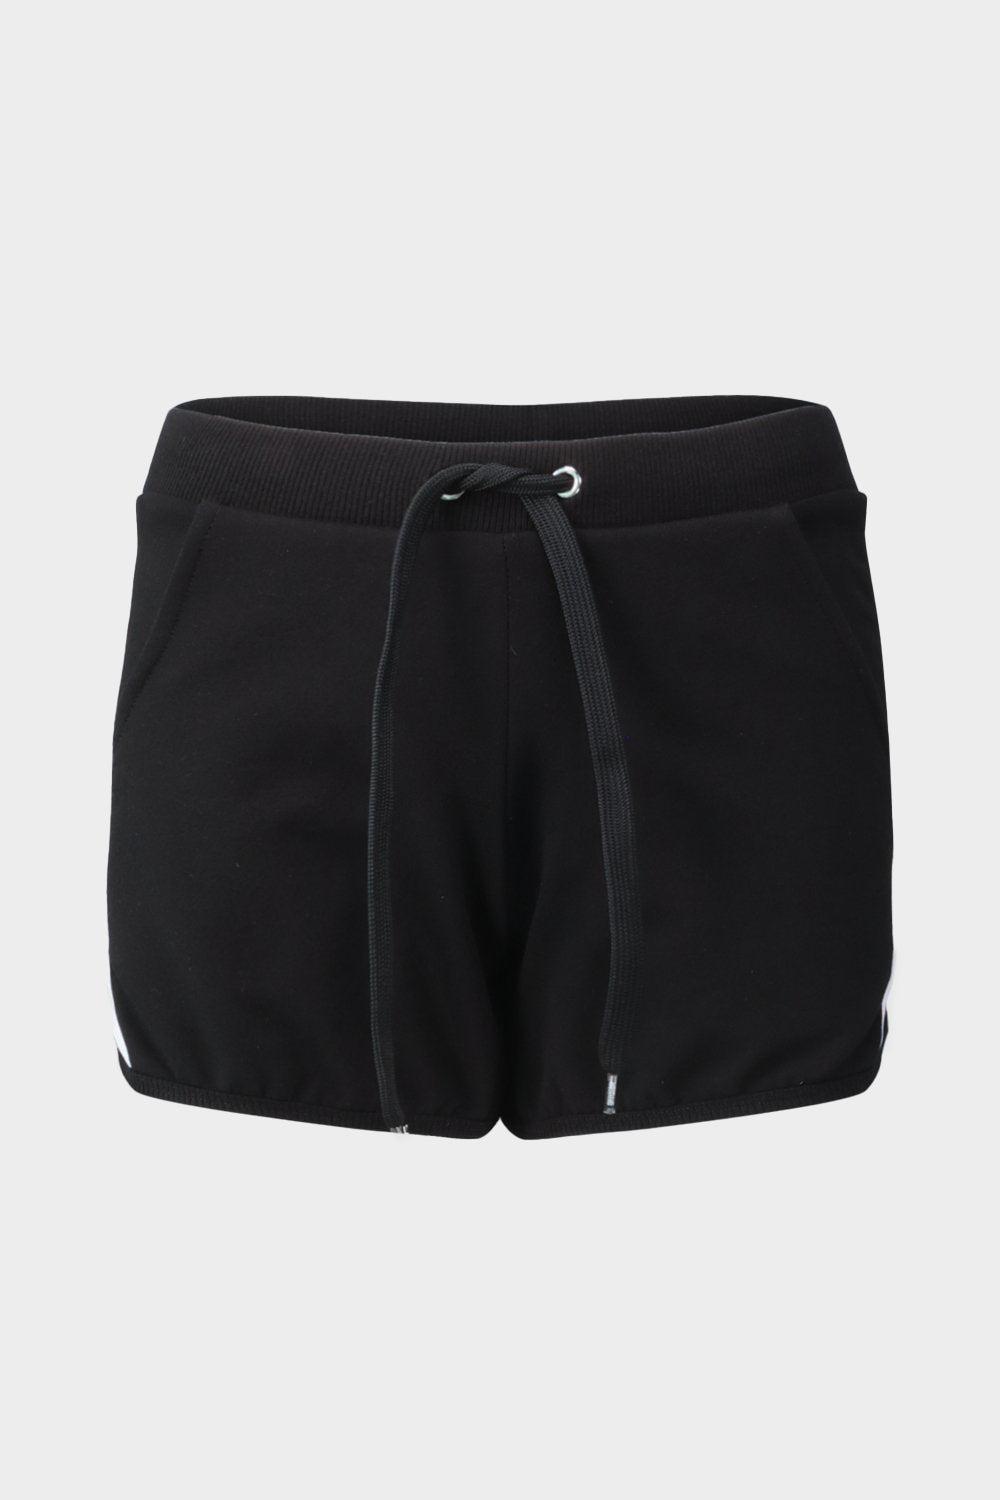 מכנסיים קצרים לנשים לוגו MOSCHINO Vendome online | ונדום .